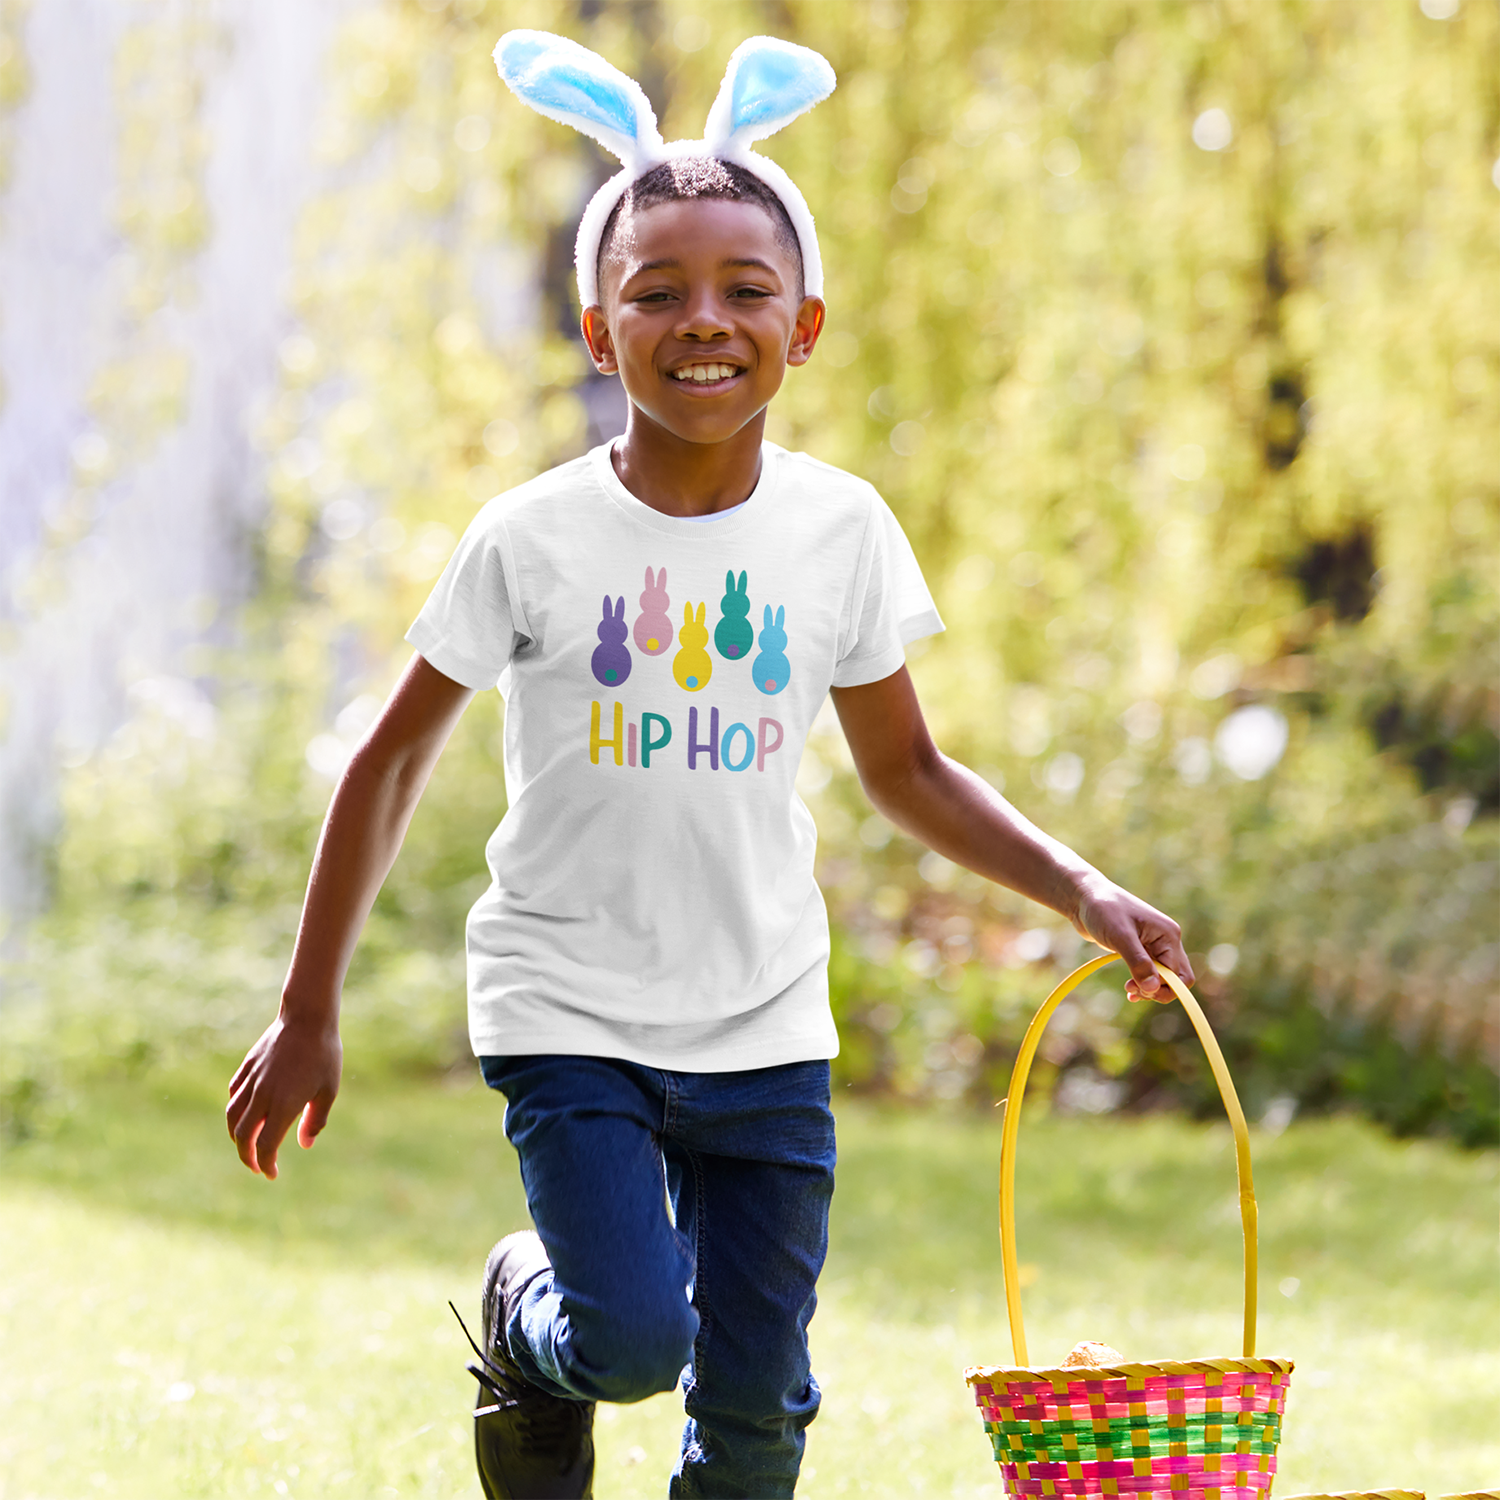 'Hip hop' bunnies kids shortsleeve shirt